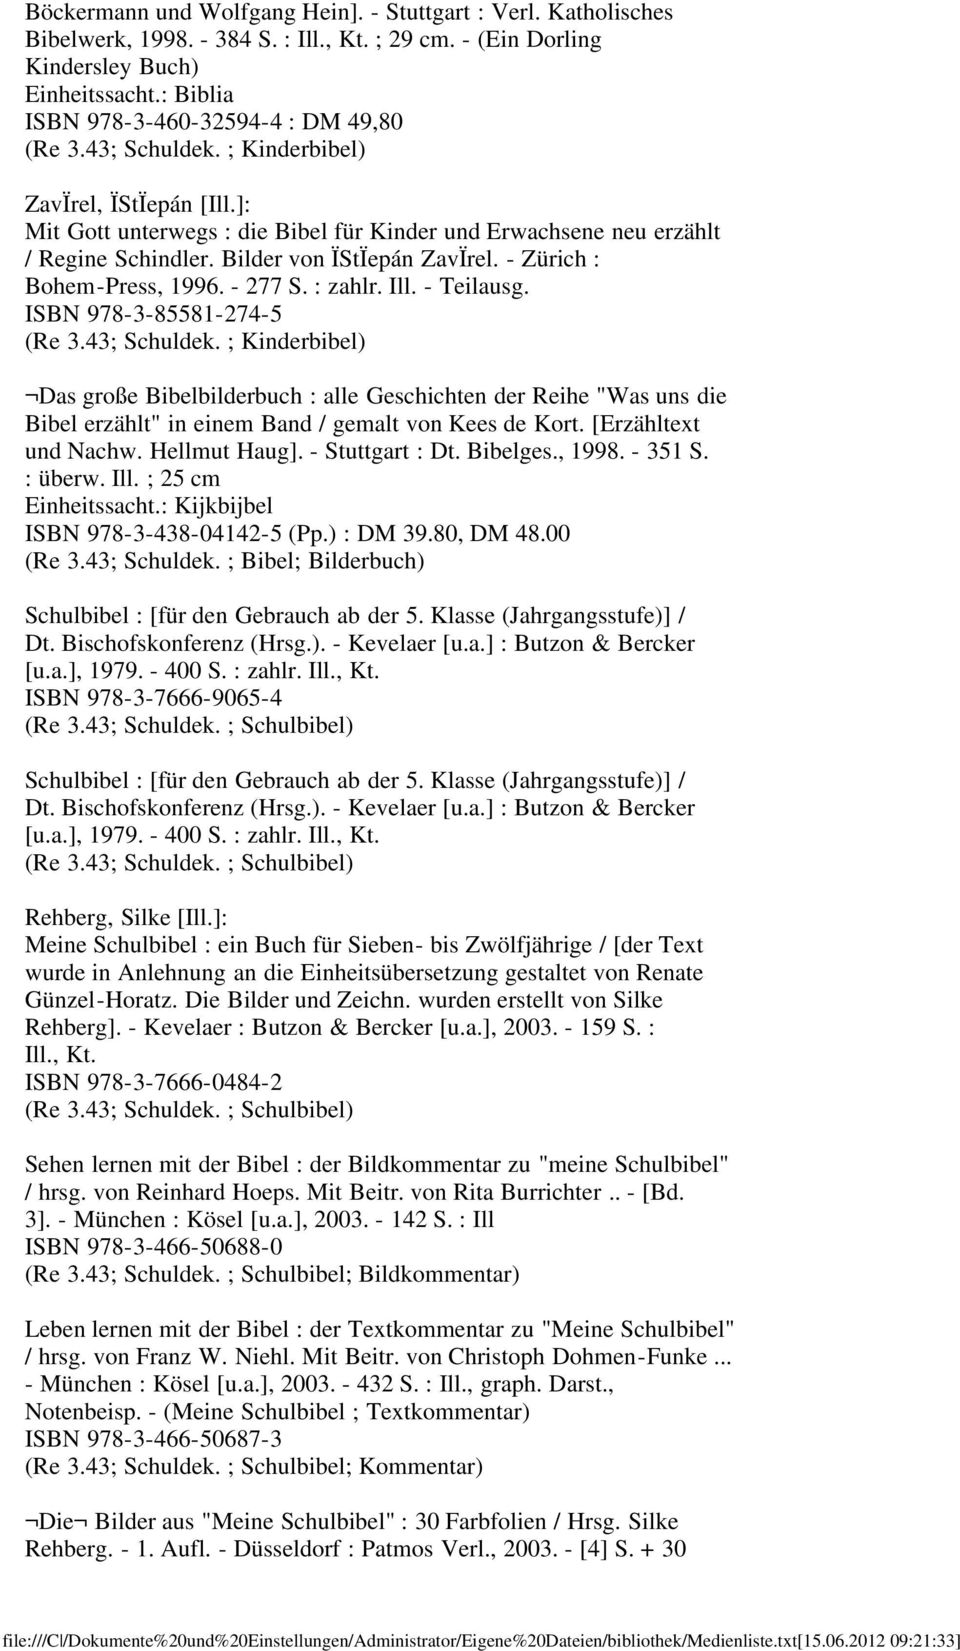 Bilder von ÏStÏepán ZavÏrel. - Zürich : Bohem-Press, 1996. - 277 S. : zahlr. Ill. - Teilausg. ISBN 978-3-85581-274-5 (Re 3.43; Schuldek.